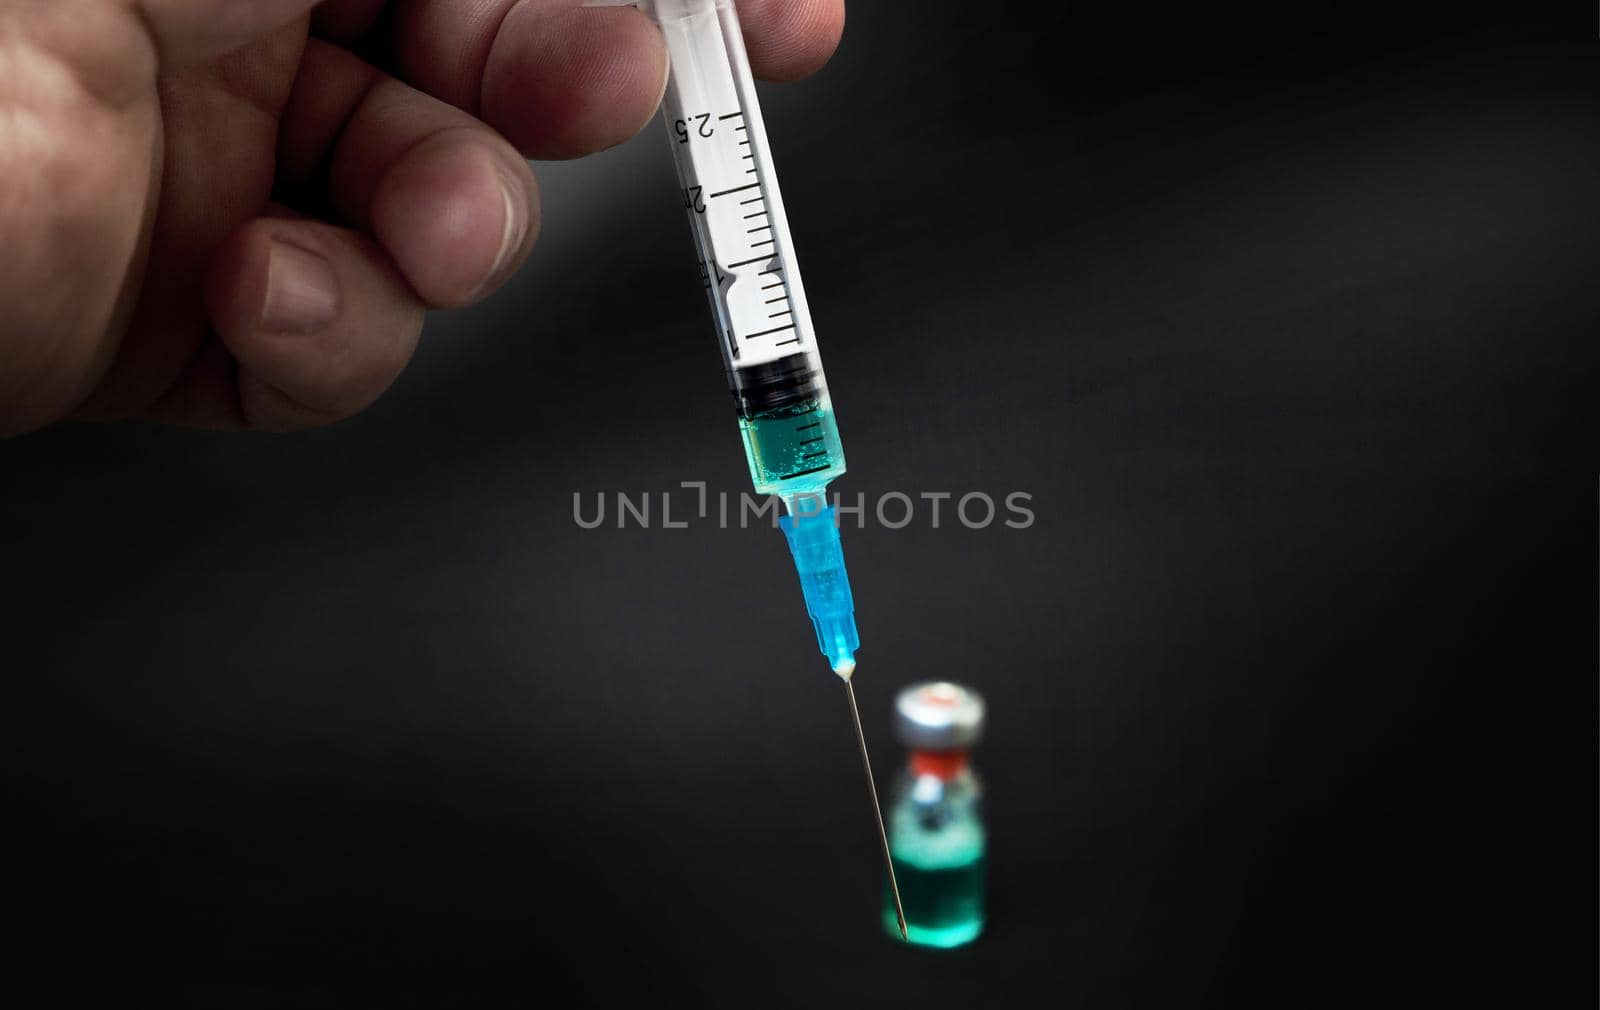 syringe isolated on black background